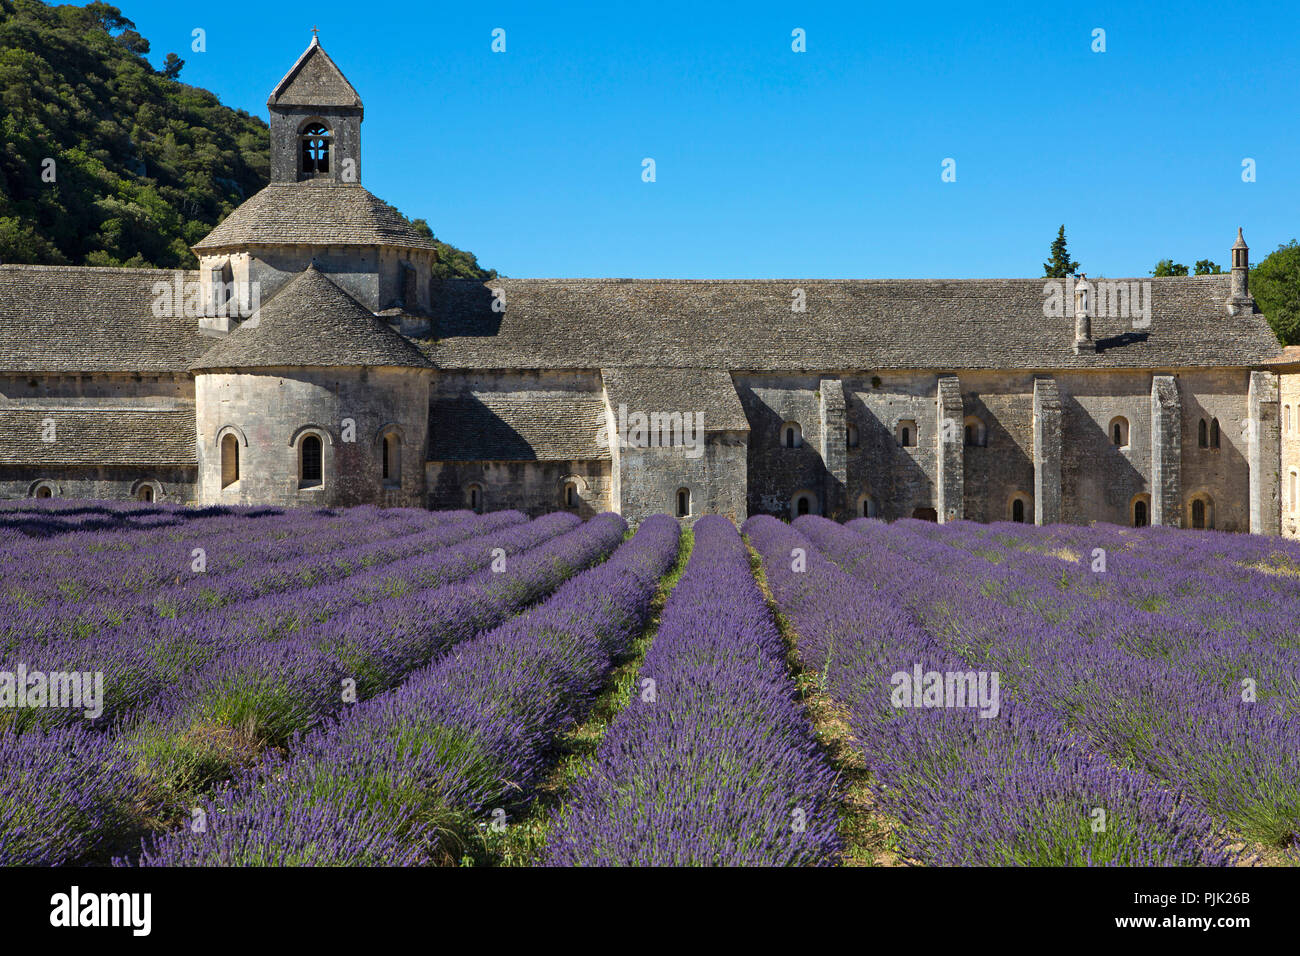 Der romanischen Zisterzienserabtei von Notre Dame von Senanque, inmitten der blühenden Lavendelfelder, Gordes, Provence, Frankreich, Europa Stockfoto